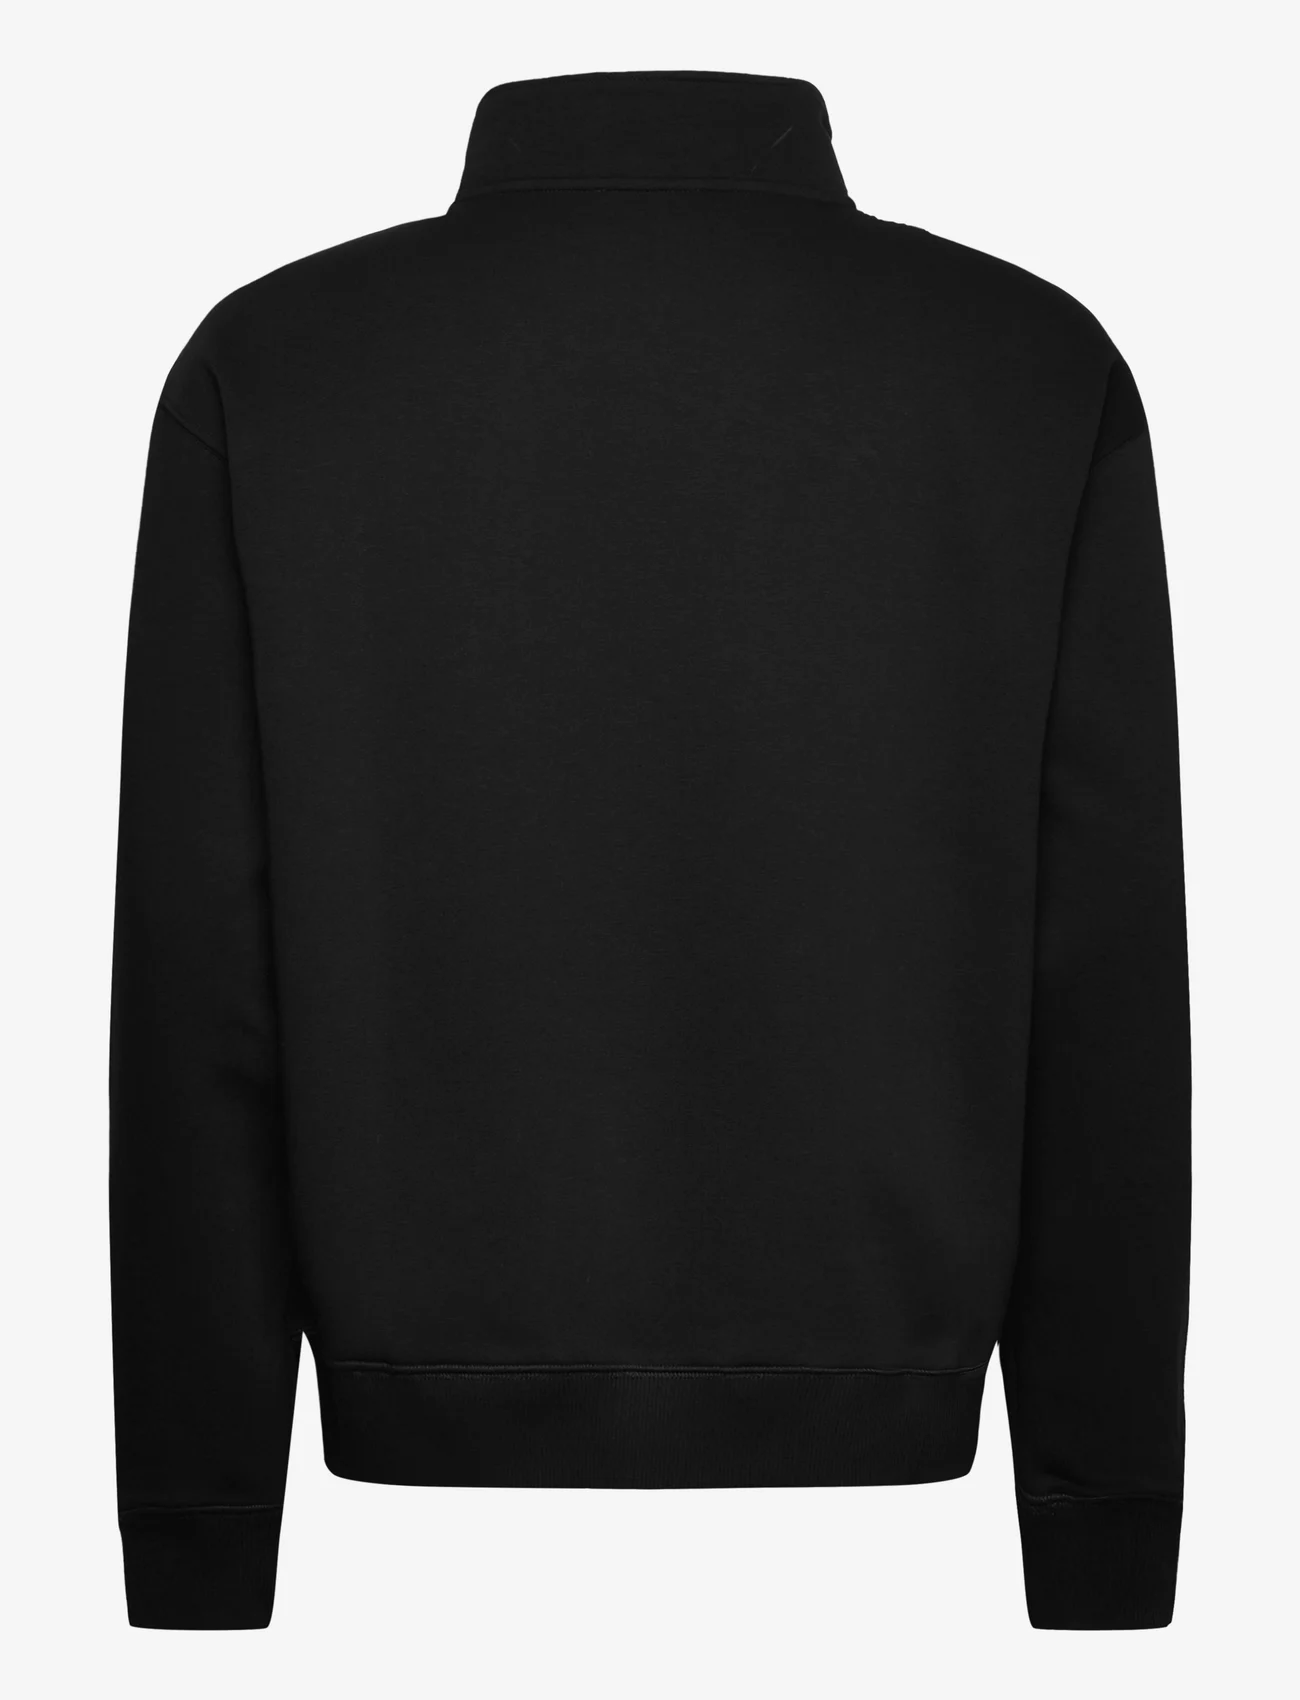 Soulland - Ken Half Zip Sweatshirt - hoodies - black - 1